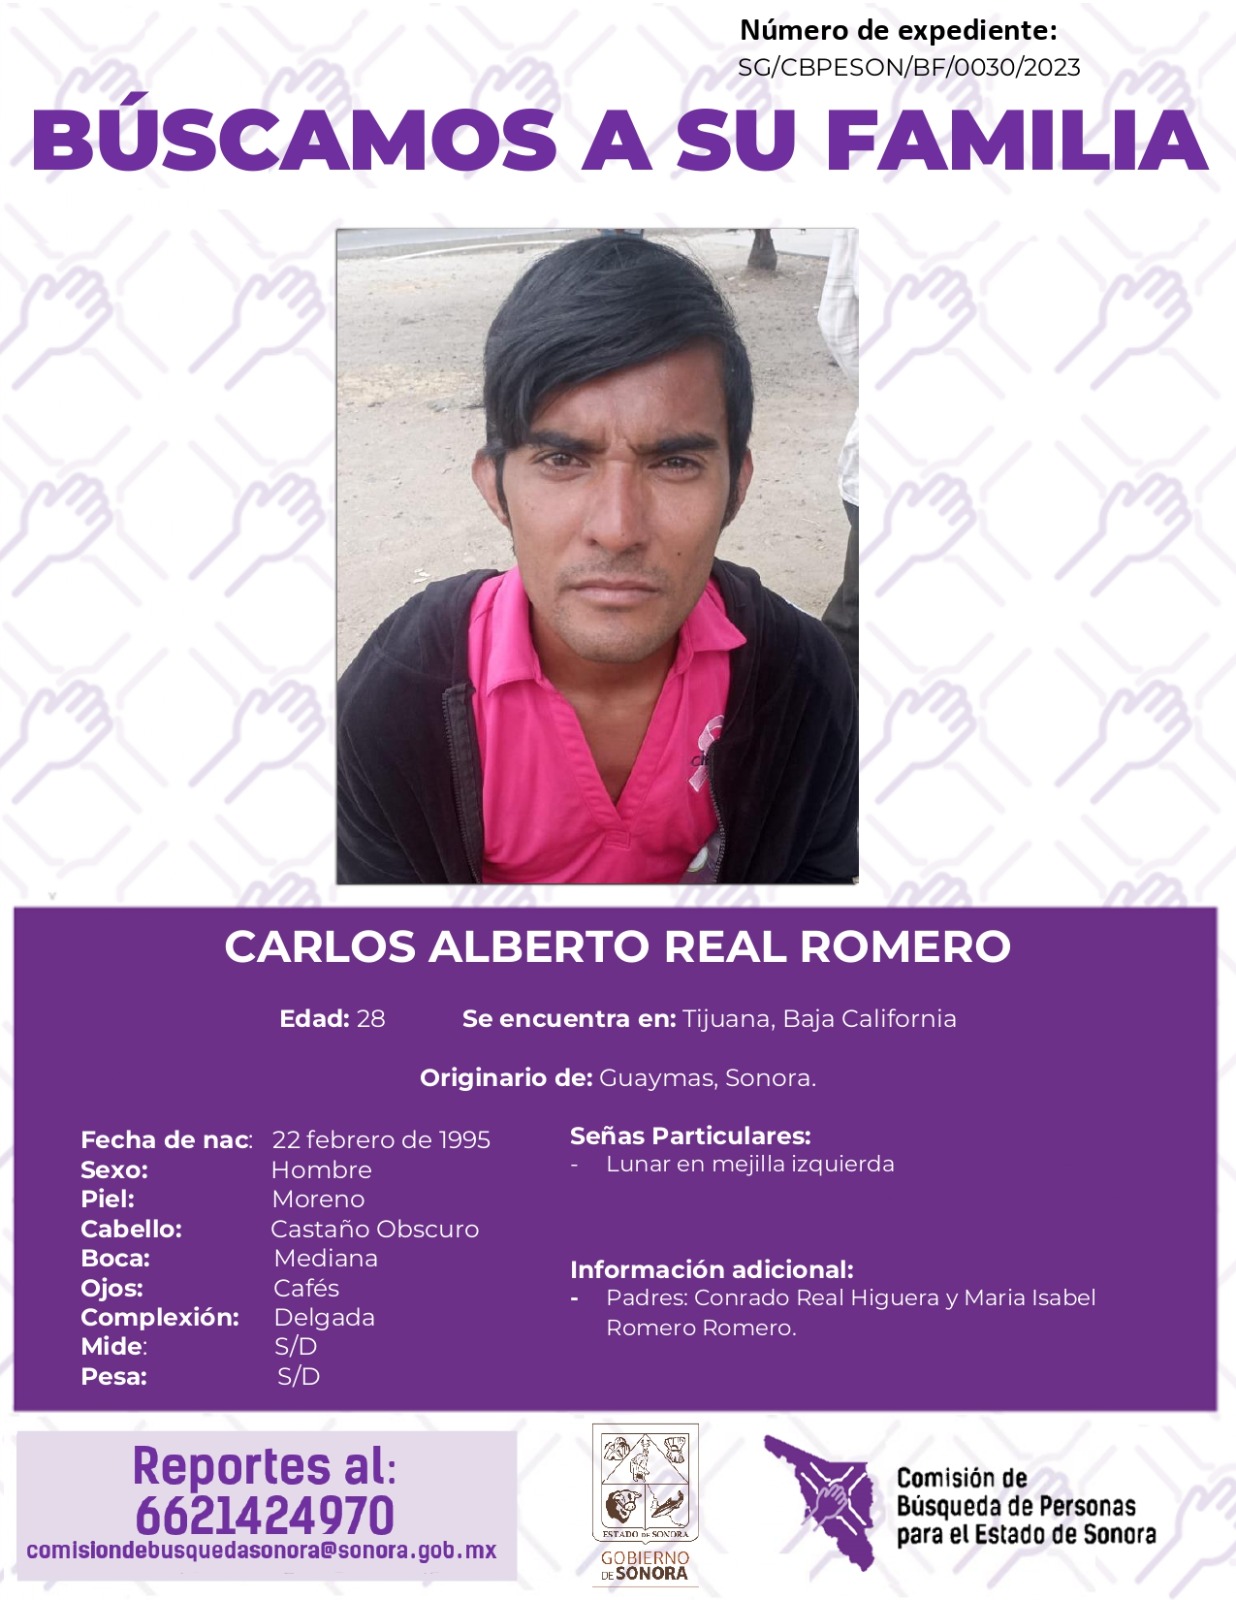 CARLOS ALBERTO REAL ROMERO - BUSQUEDA DE FAMILIA